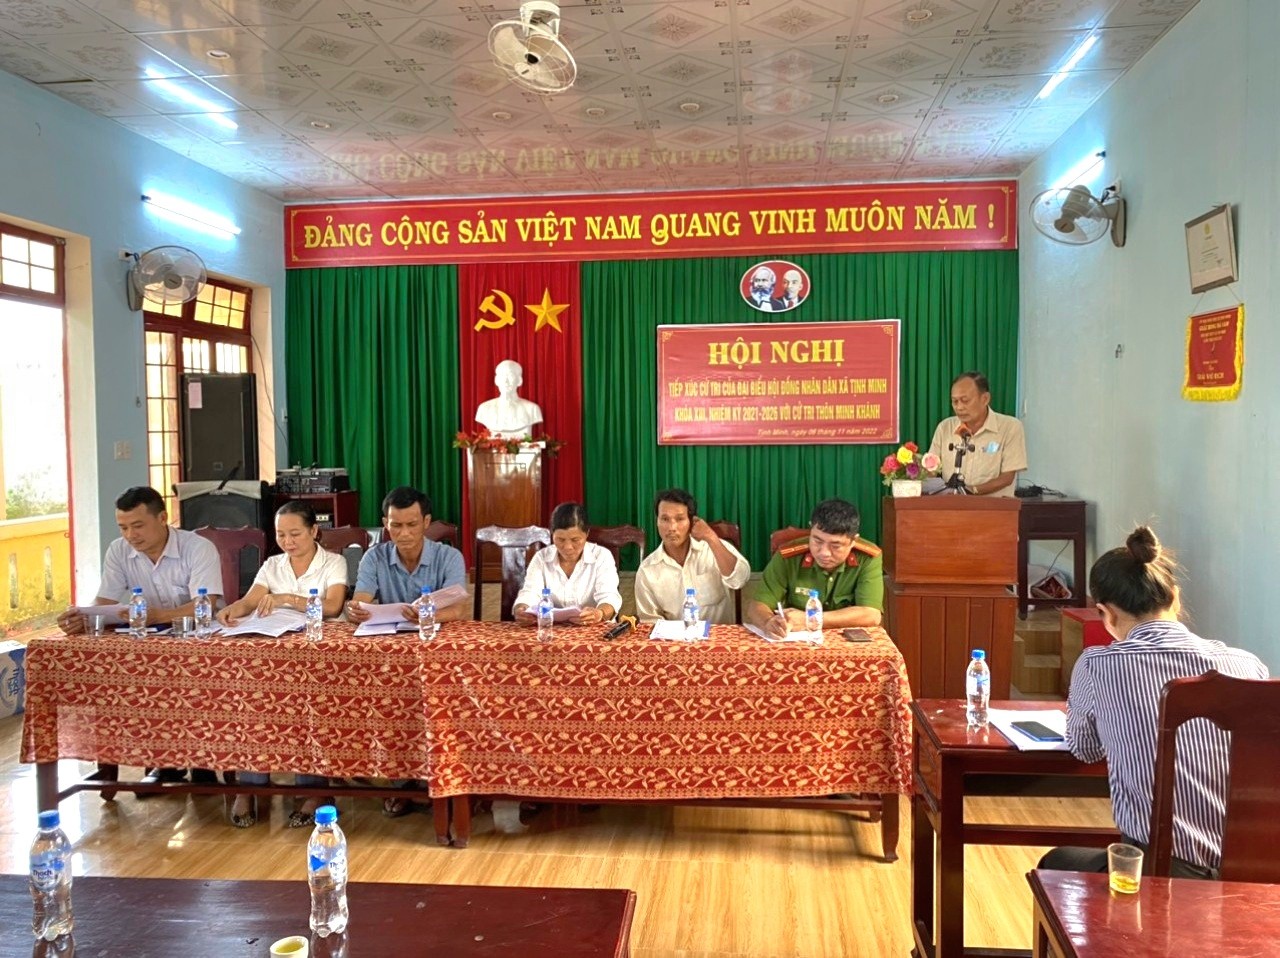 Hội đồng nhân dân xã Tịnh Minh, khoá XIII, nhiệm kỳ 2021 - 2026 tiếp xúc cử tri trước kỳ họp thứ 6 (Thường kỳ cuối năm 2022)